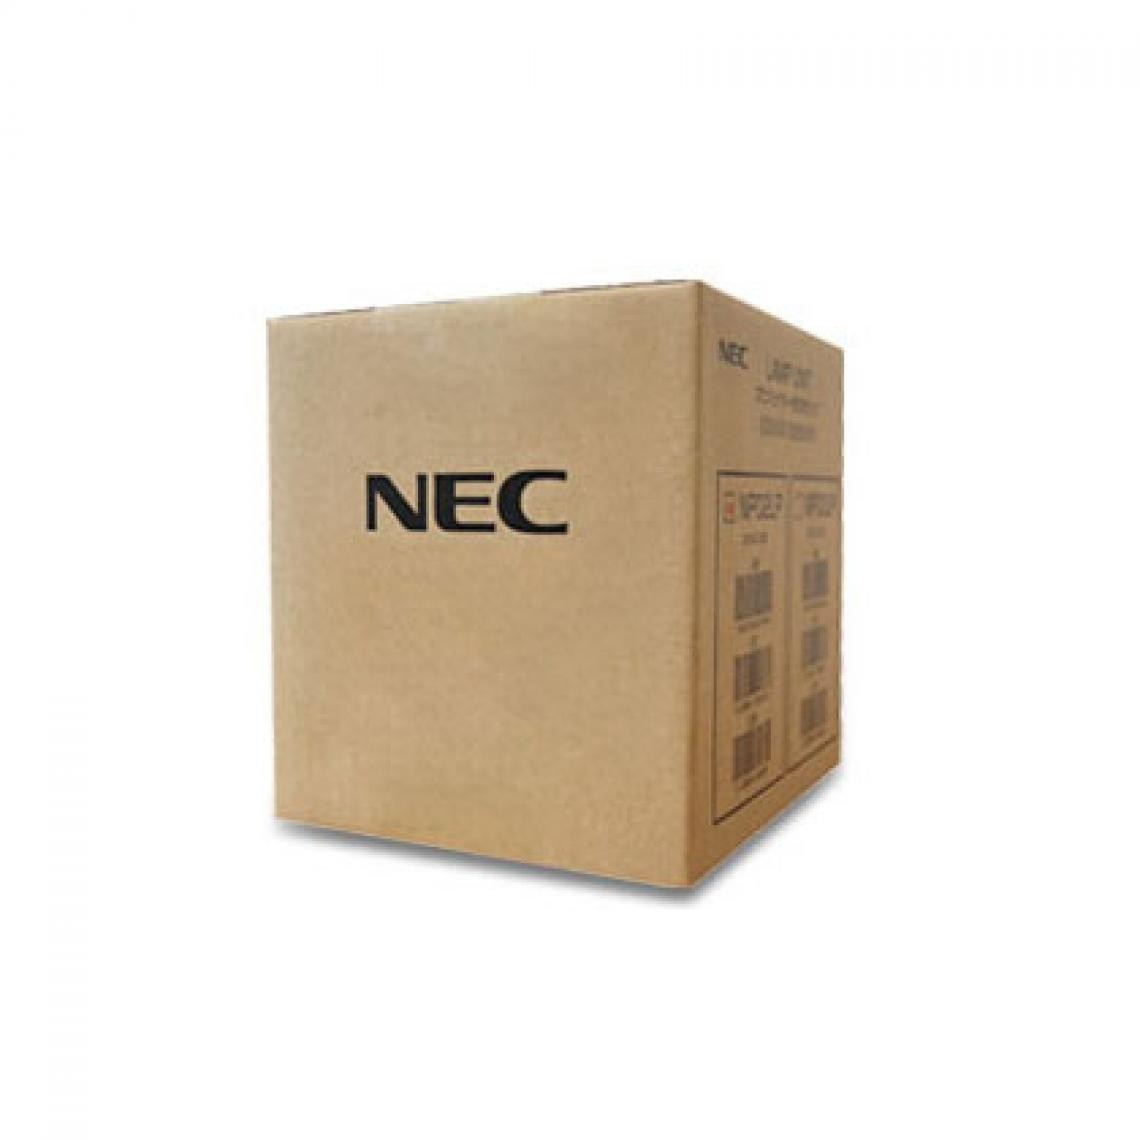 Nec - NEC CK02XUN MFS 55 L - Support et Bras